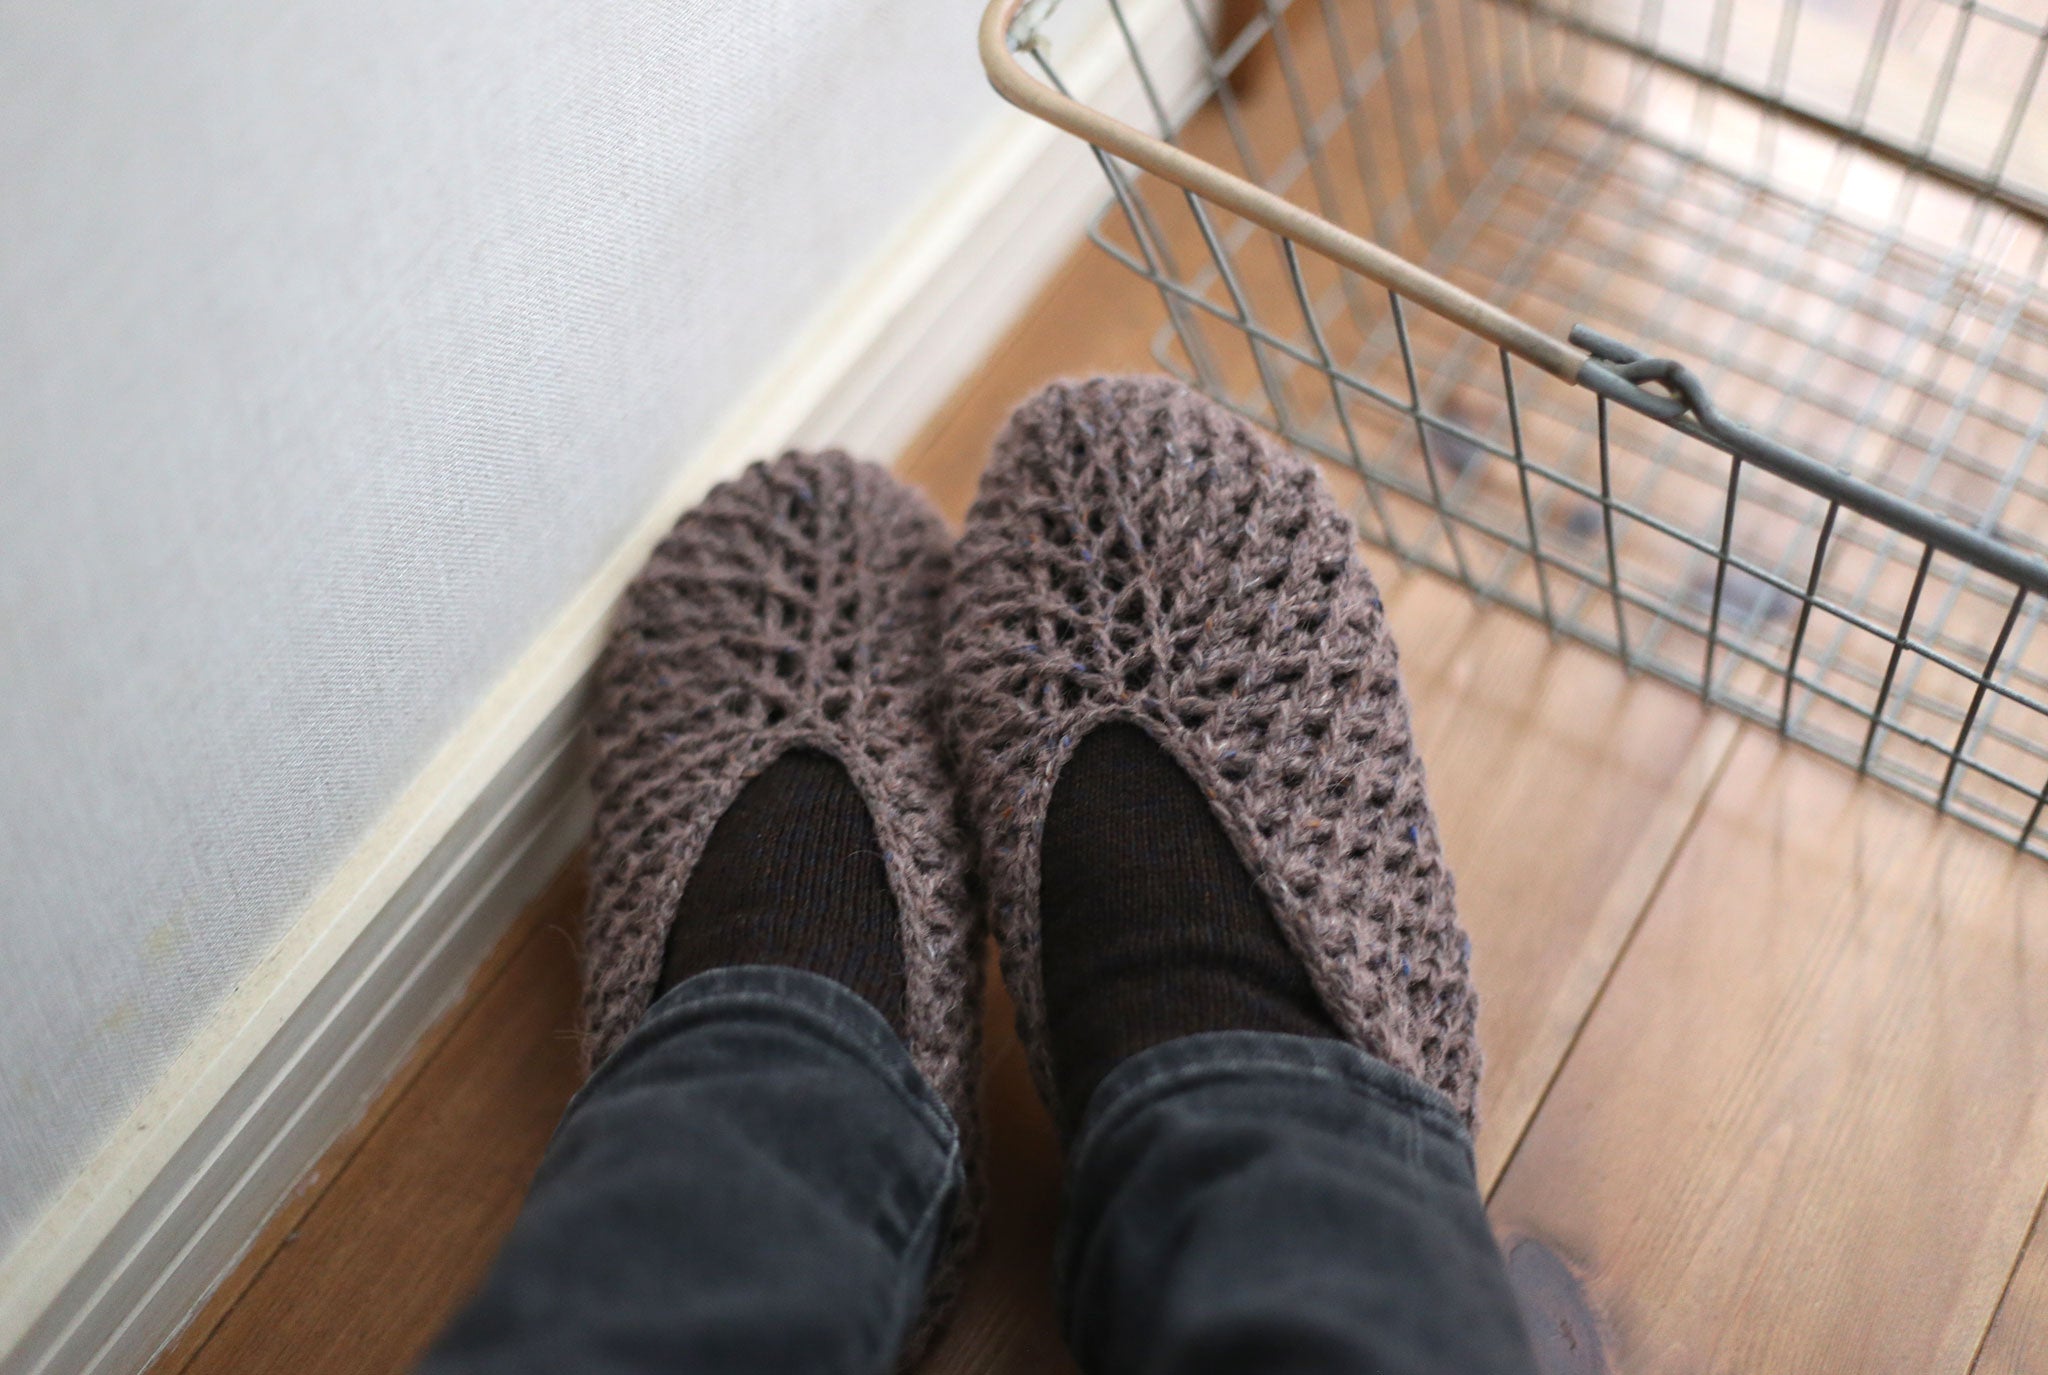 "Matching Slippers" Crochet Pattern